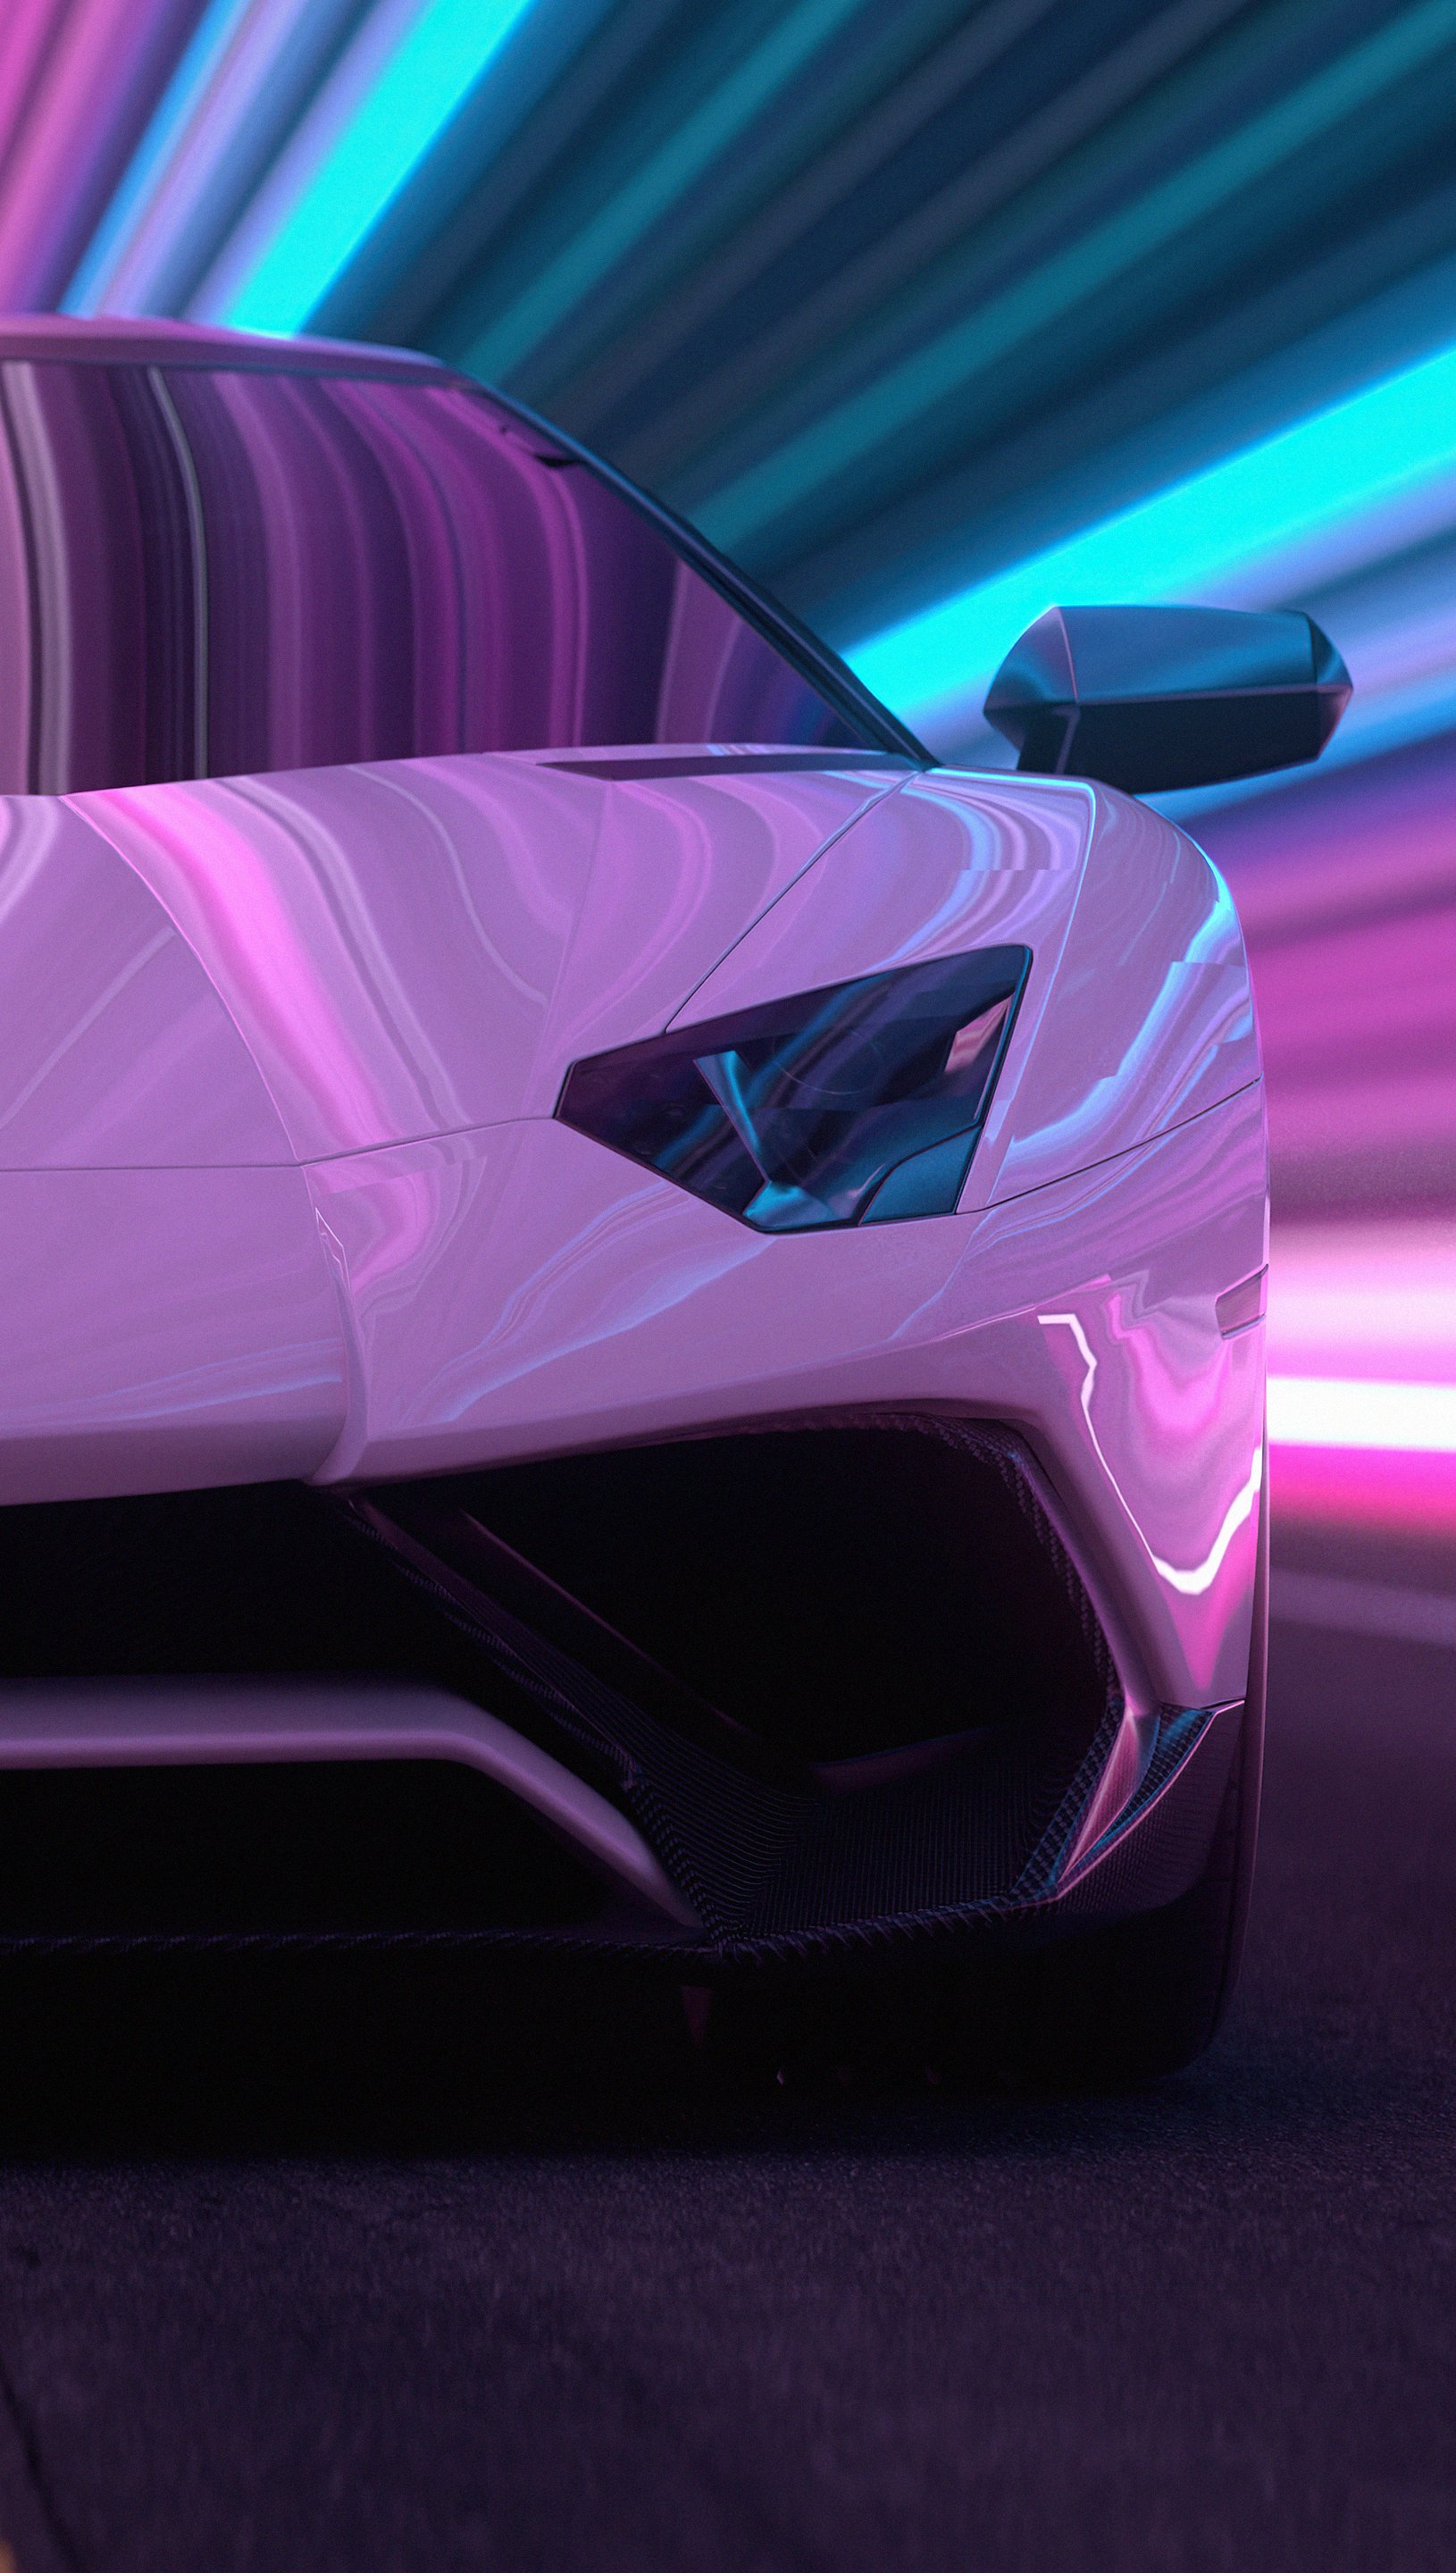 Lamborghini Aventador CGI Fondo de pantalla 5k Ultra HD ID:7229